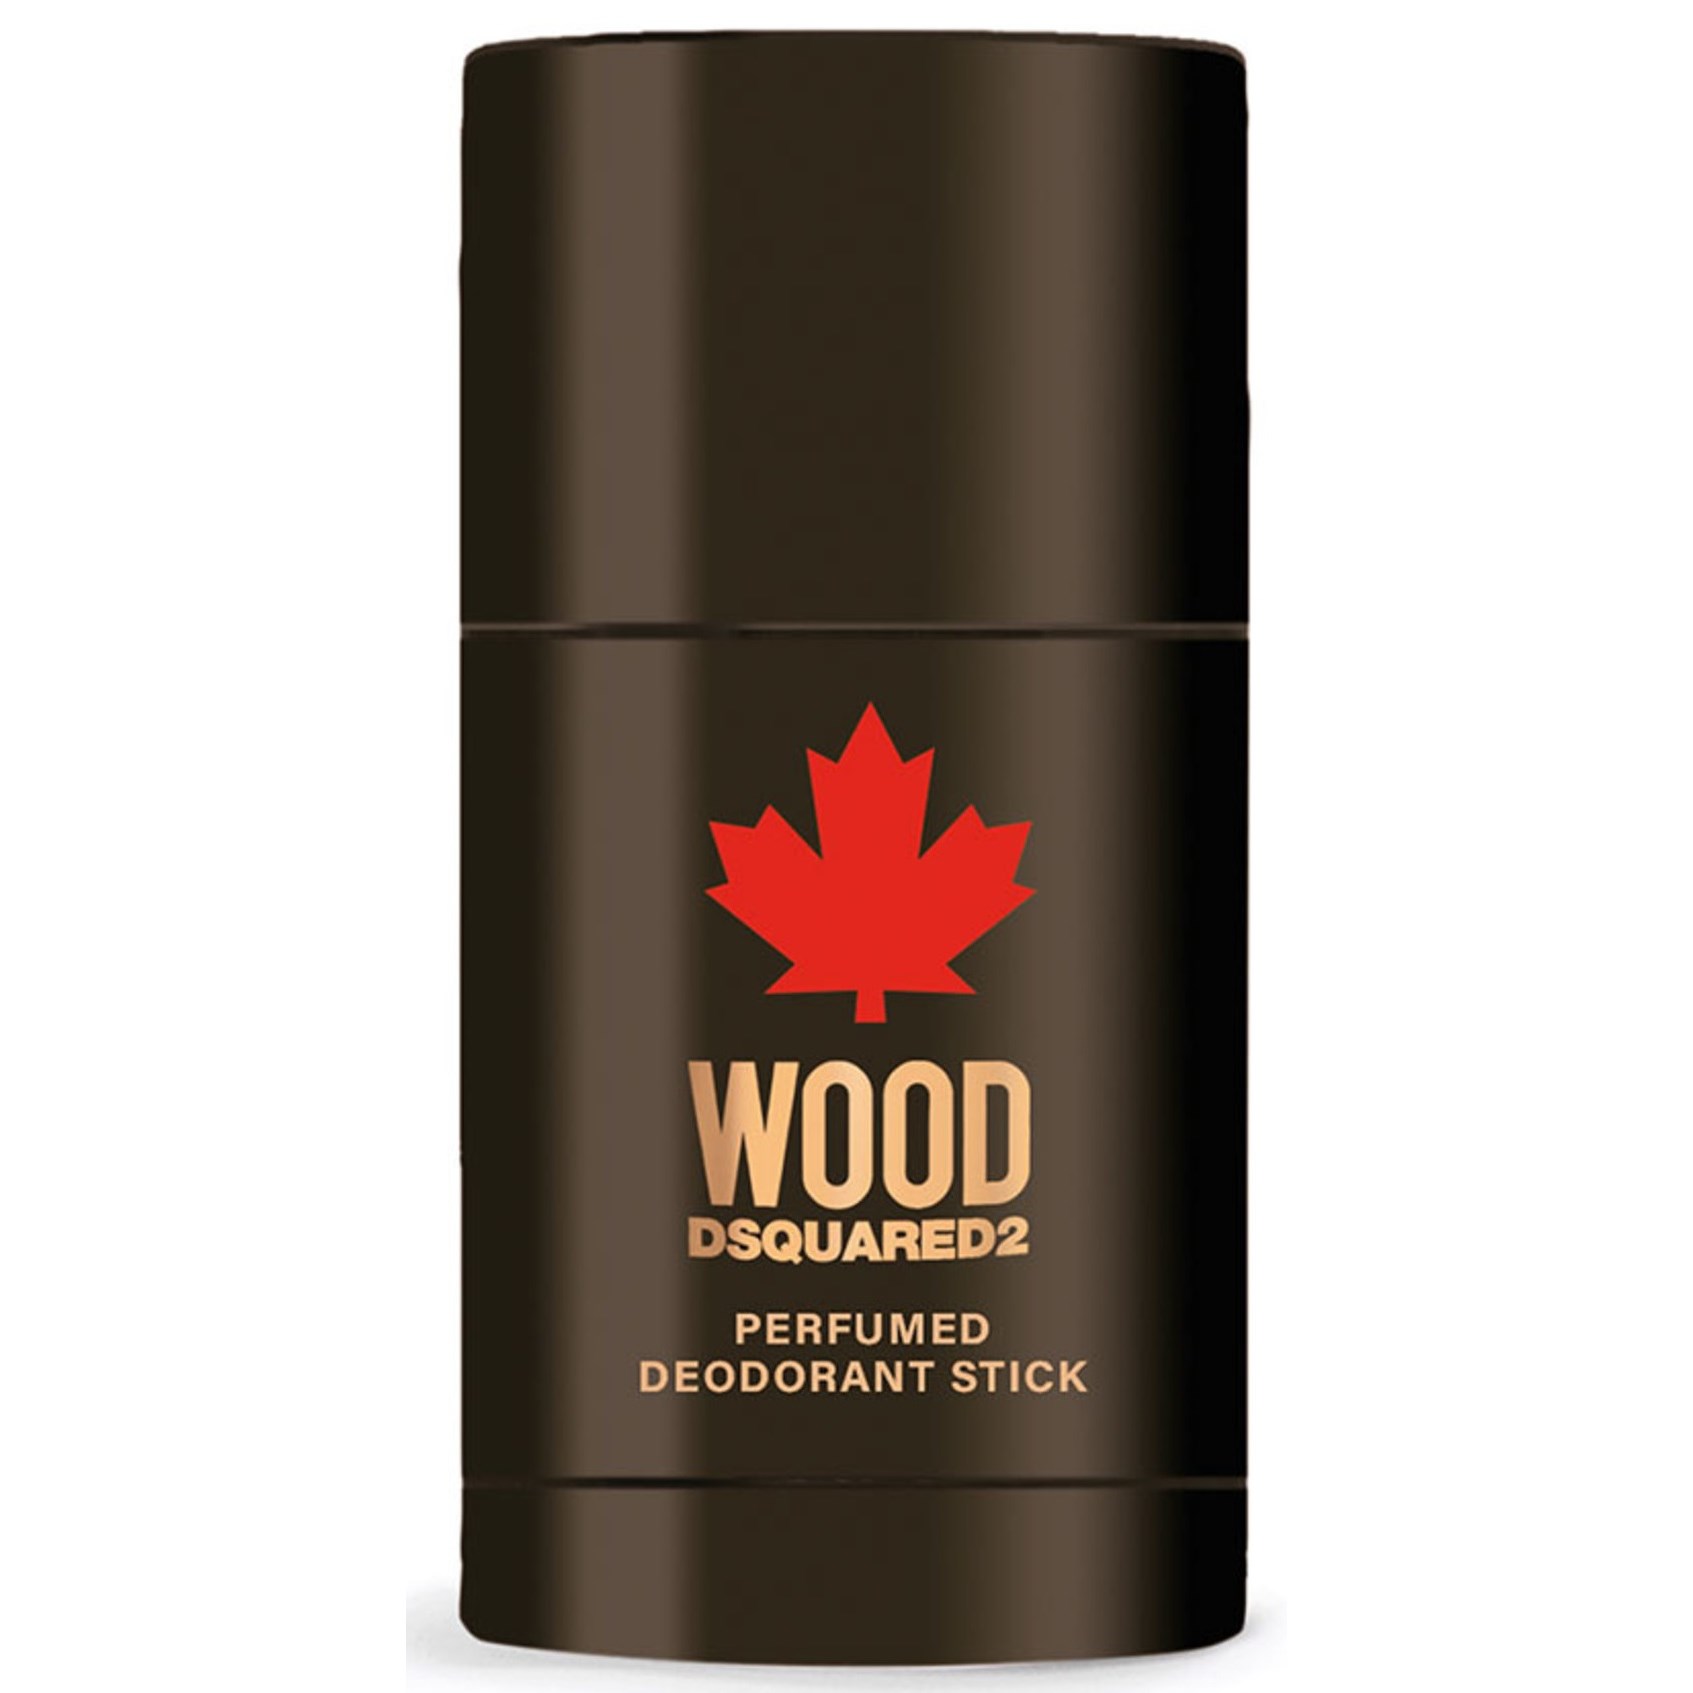 Фото - Дезодорант Dsquared2 Hewood Wood Ph Deo Stick 75g - Dezodorant 75 g 